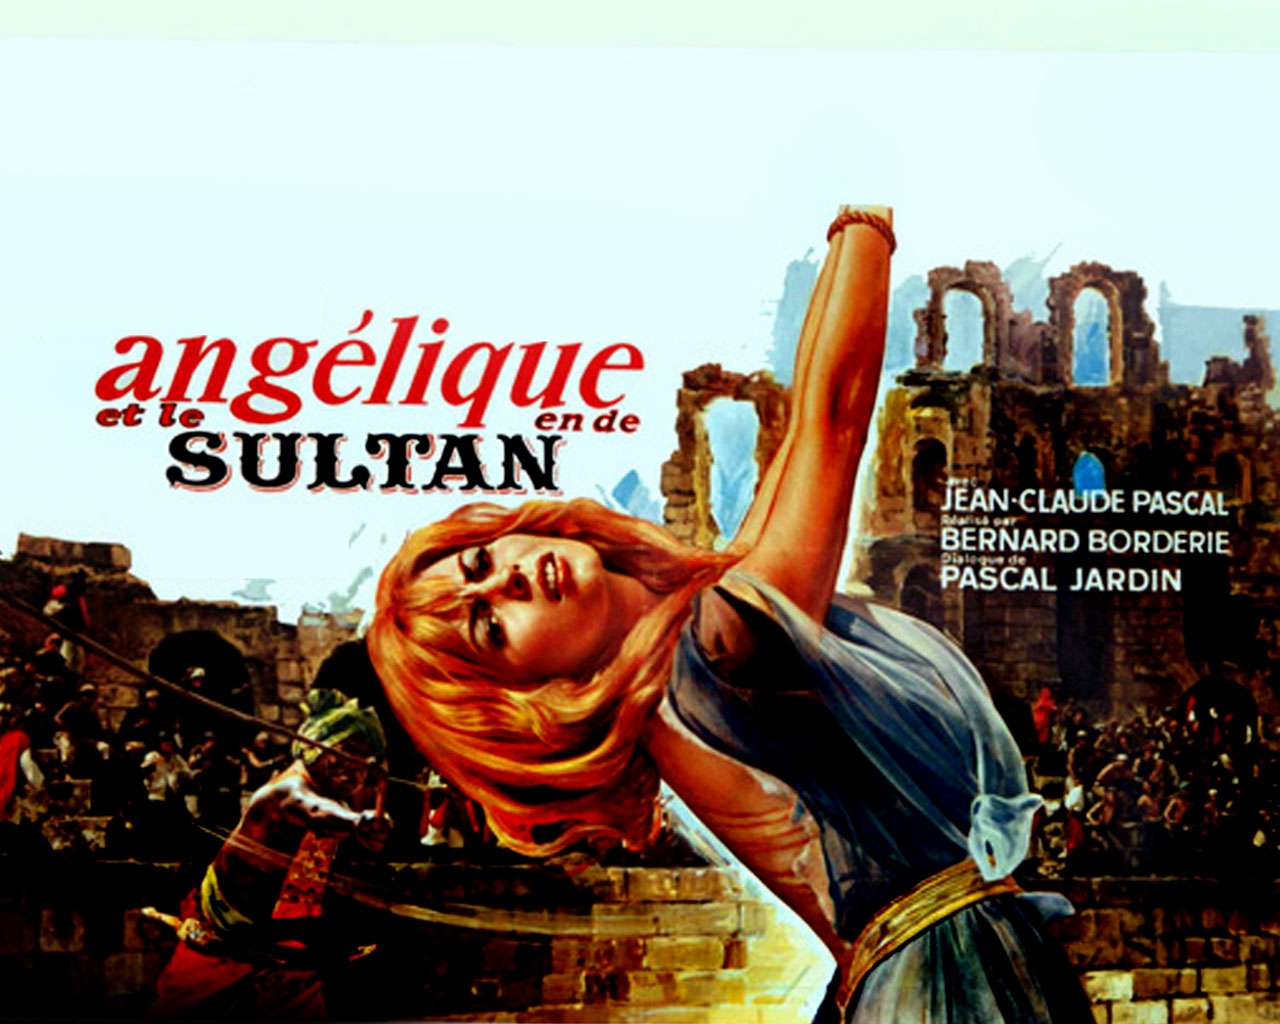 Angelique and the Sultan (Angelique et le sultan)